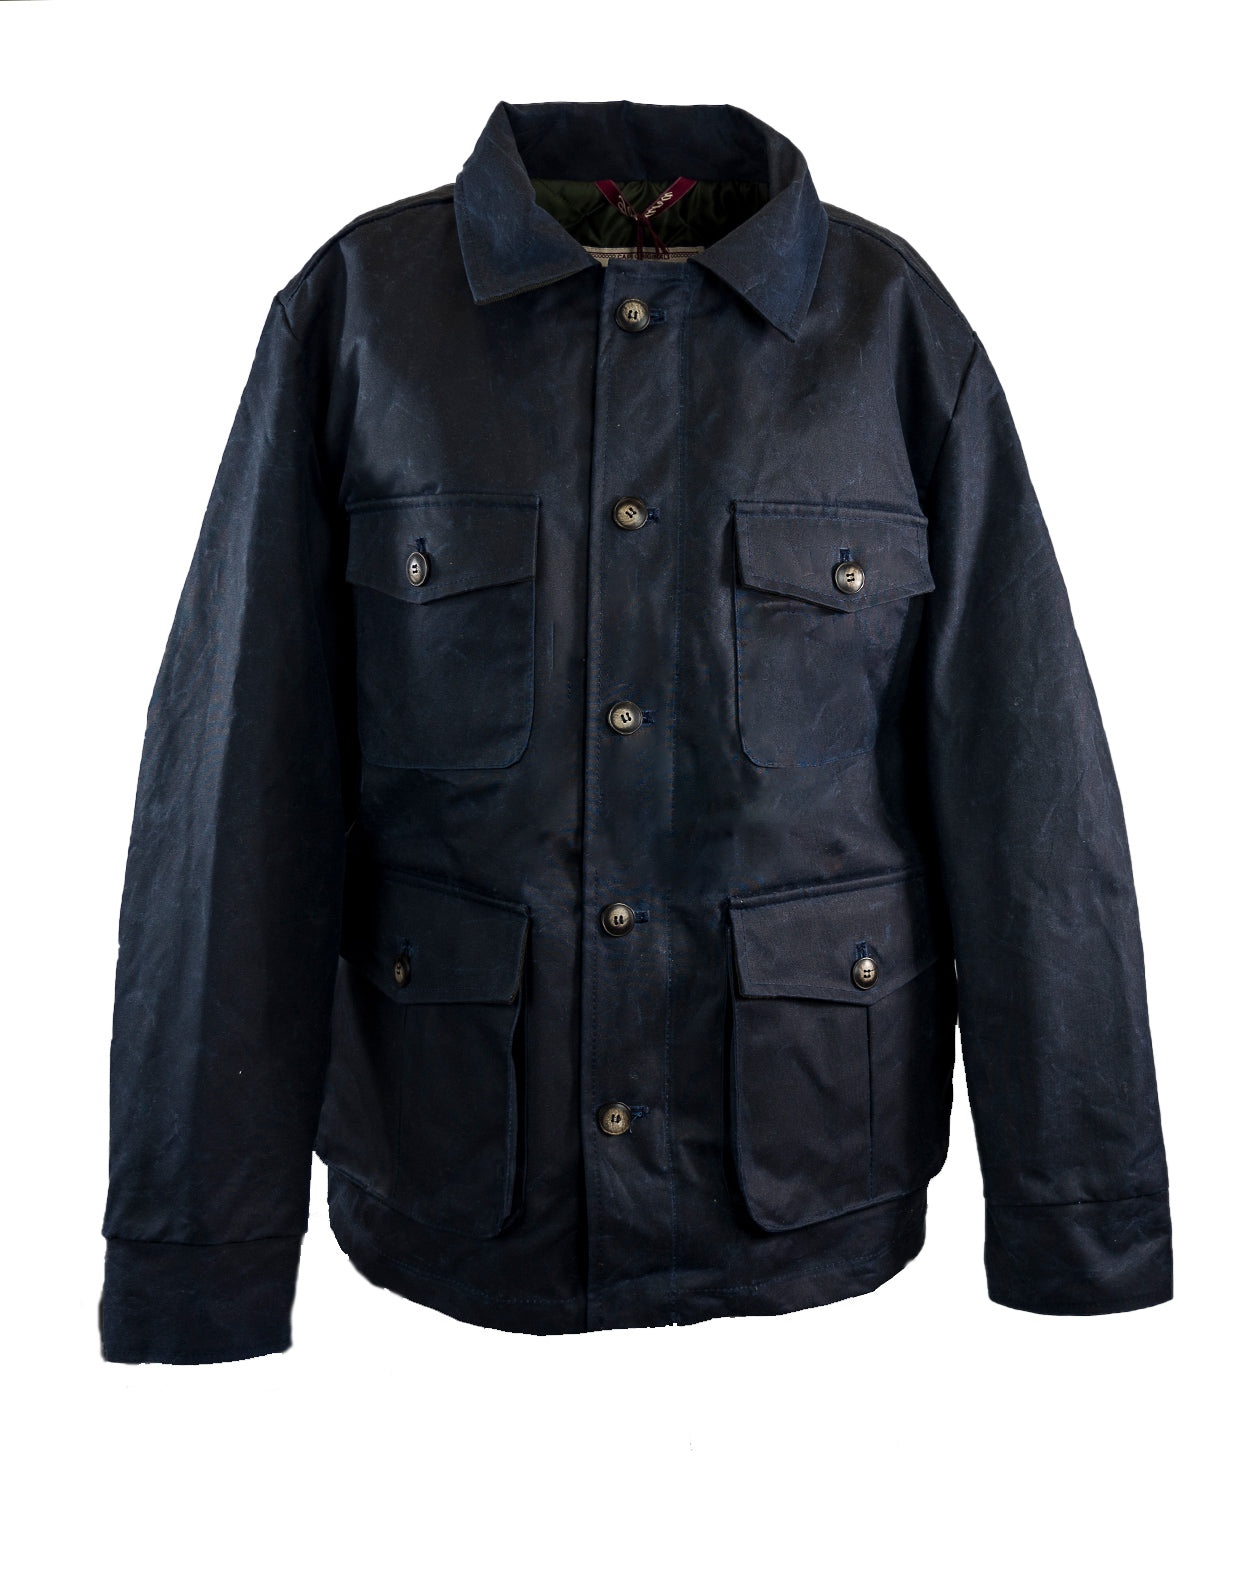 Field Jacket in Waxed cotton